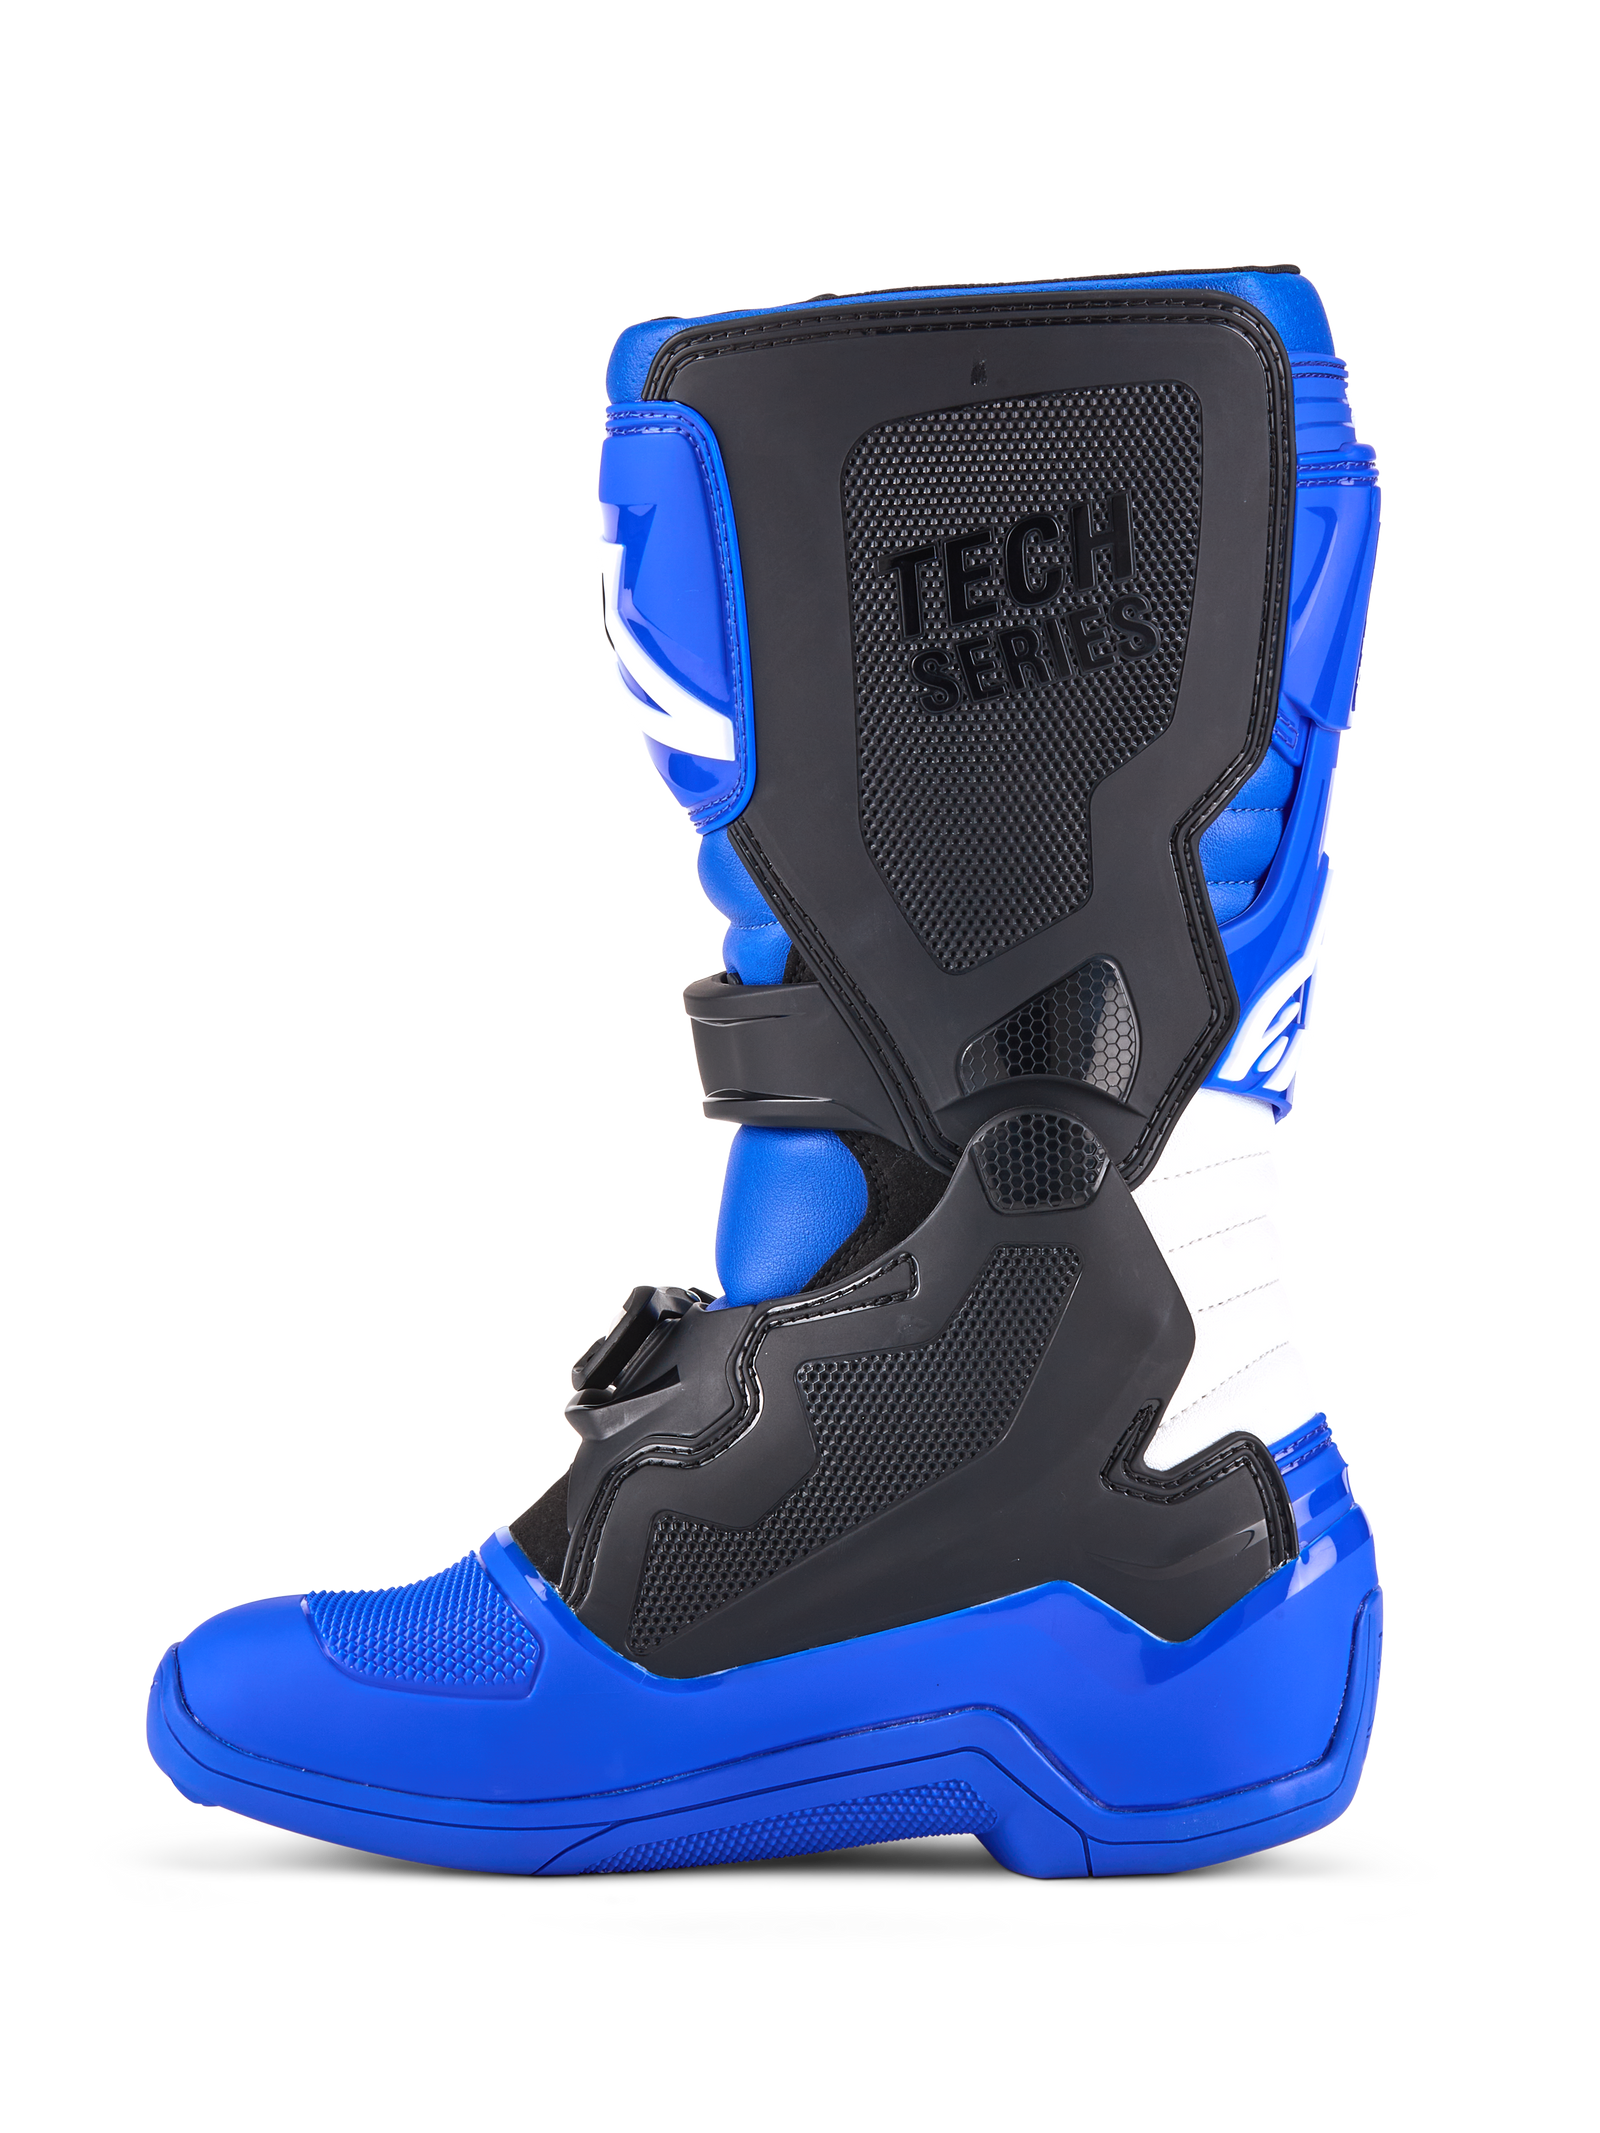 Tech 7 S Boots